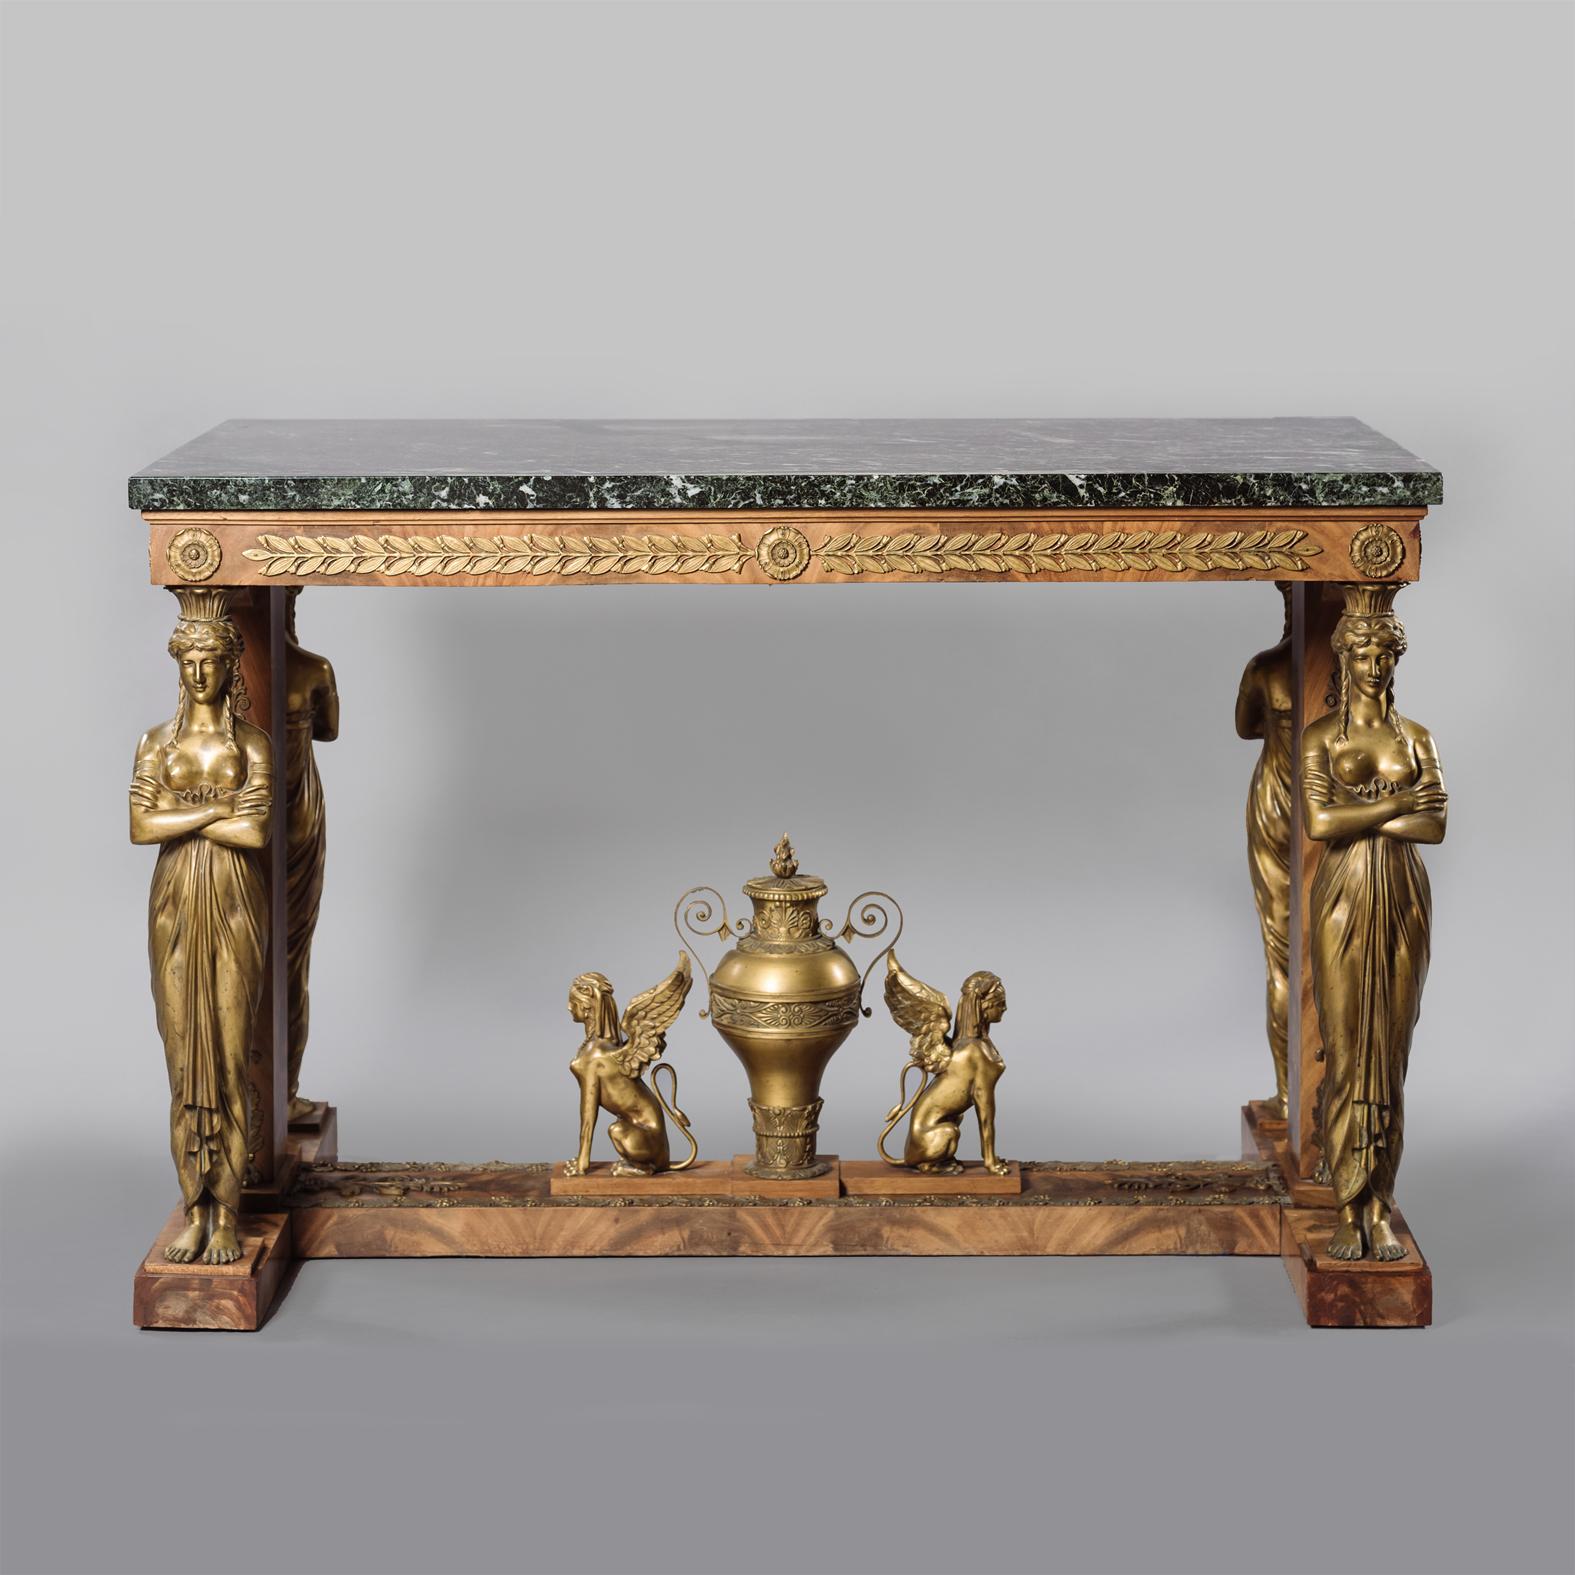 Ein sehr feiner Empire-Stil vergoldete Bronze montiert Mahagoni Tisch de Milieu, mit einem Verde Antico Marmorplatte, in der Manier von Jacob Desmalter. 

Die rechteckige Marmorplatte über einem Fries mit Lorbeerblättern auf Karyatidenstützen aus